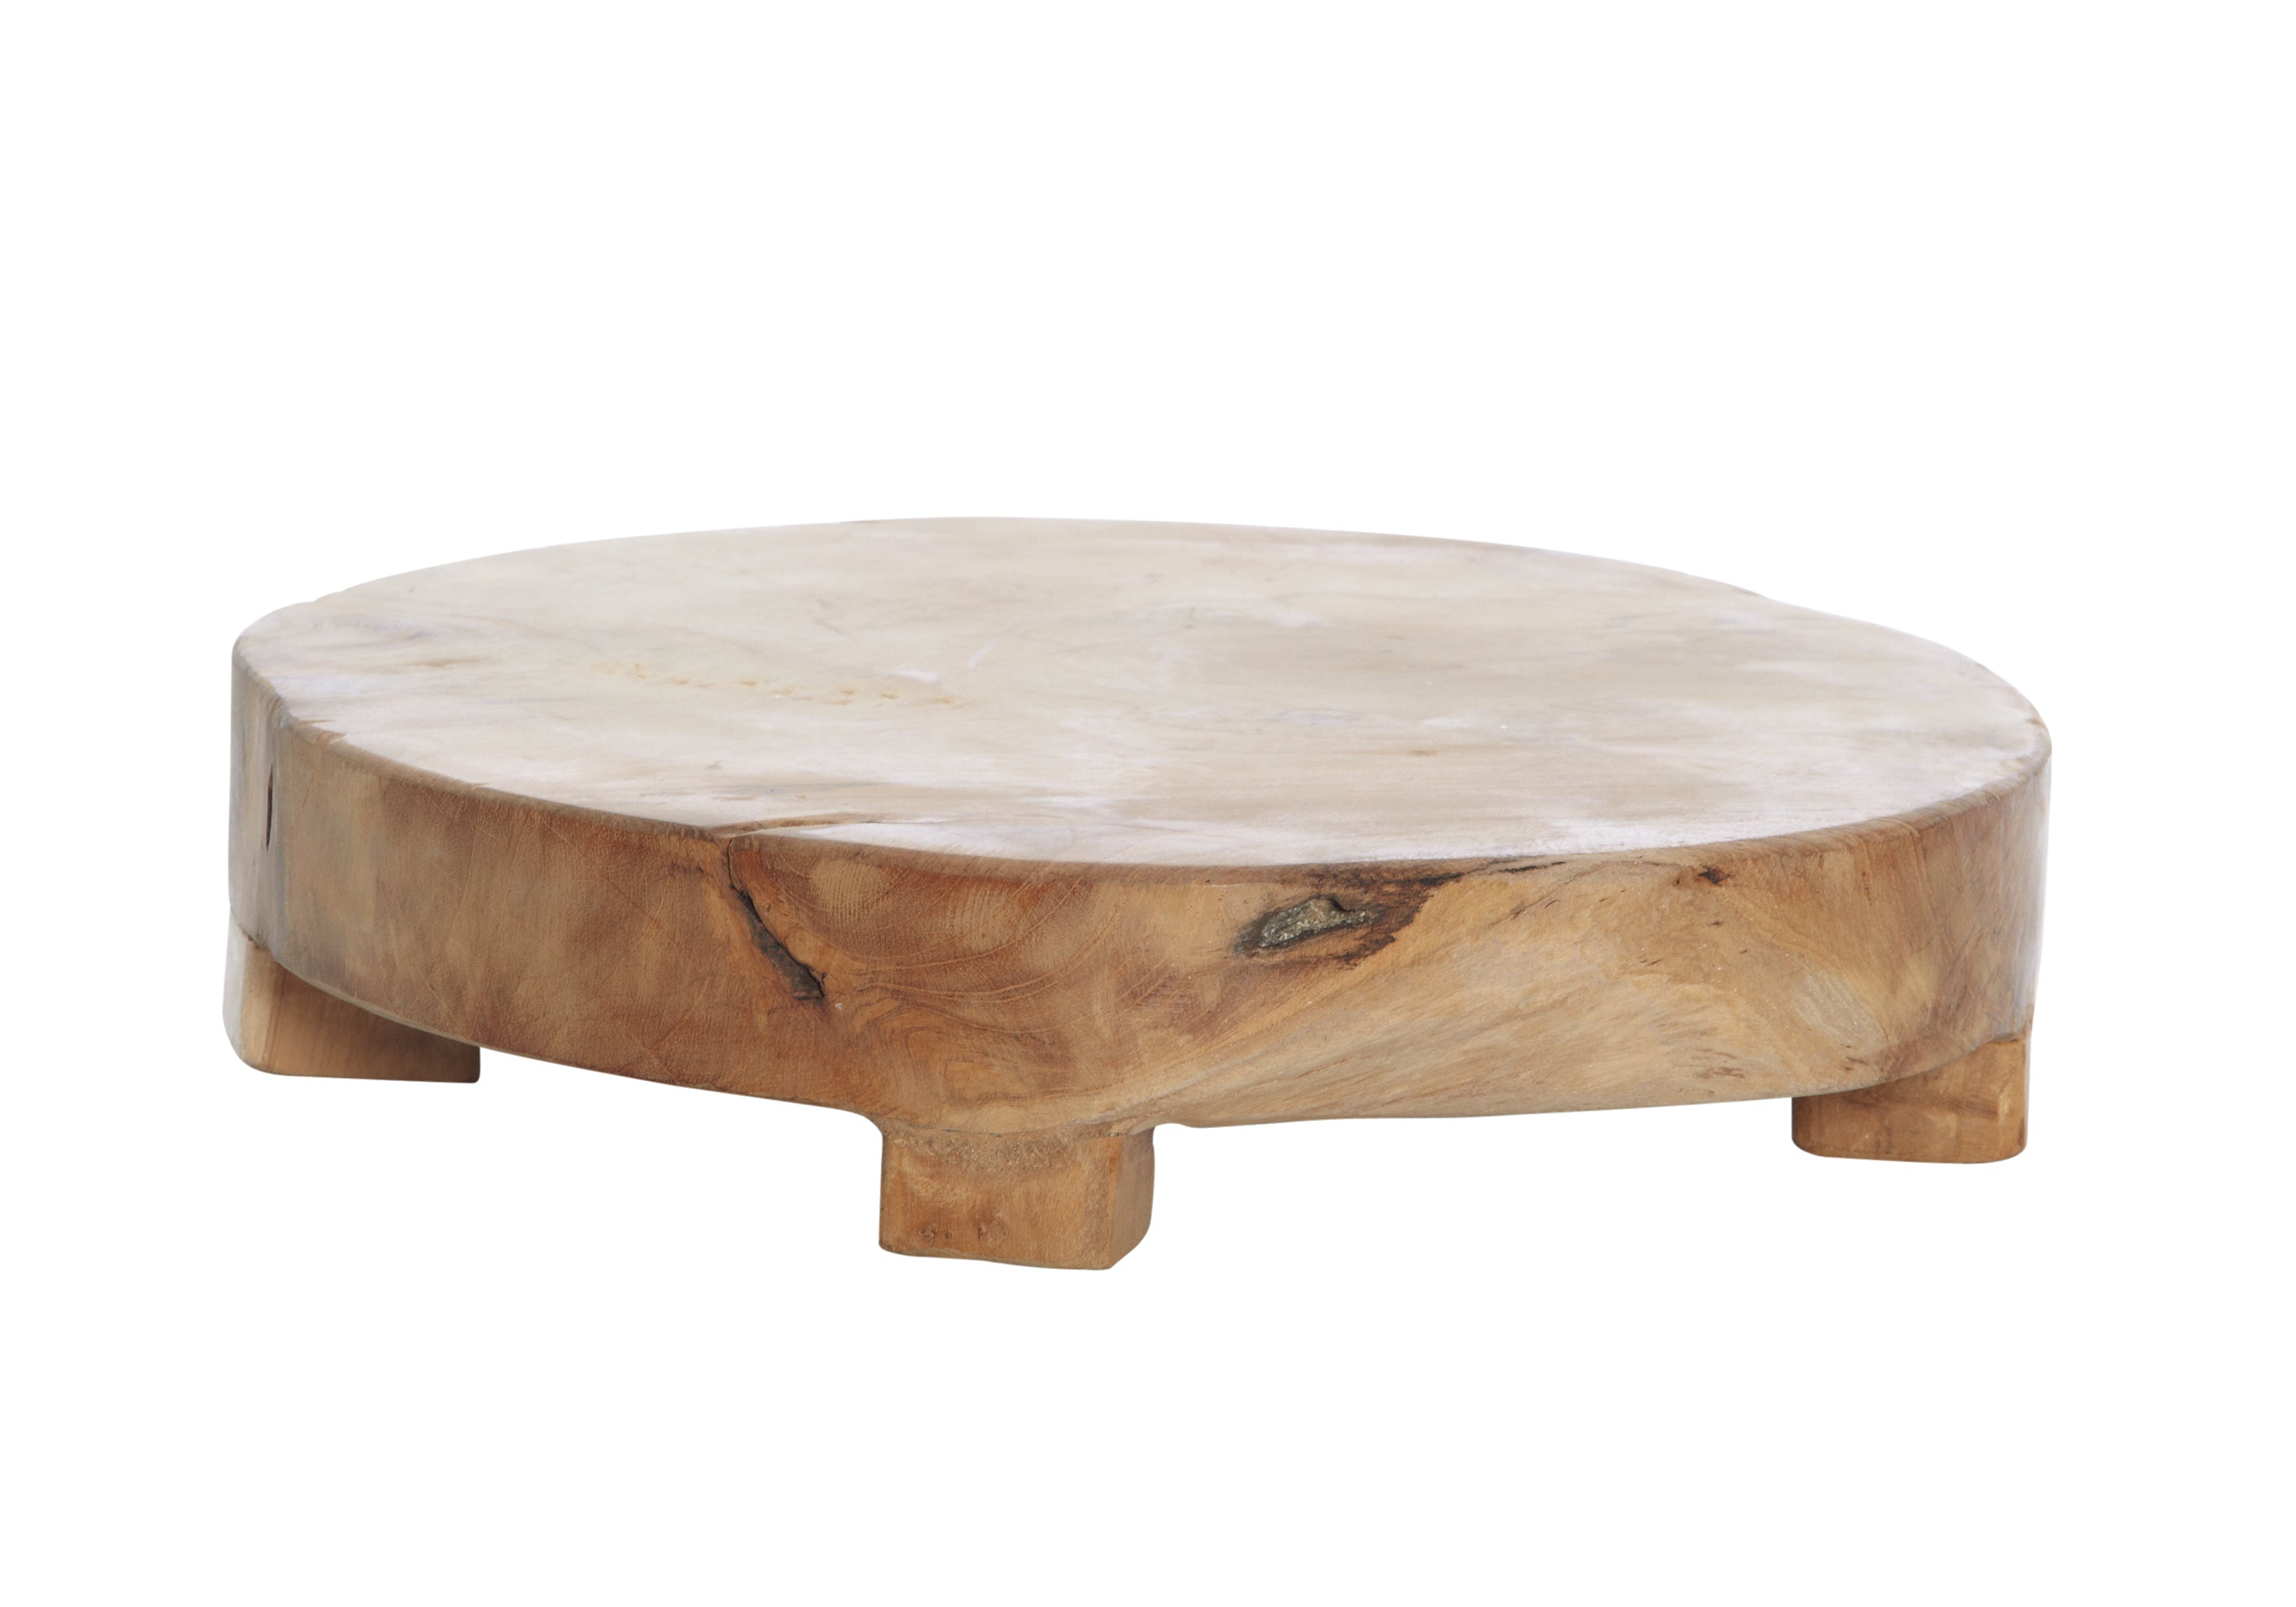 Wooden Round Board